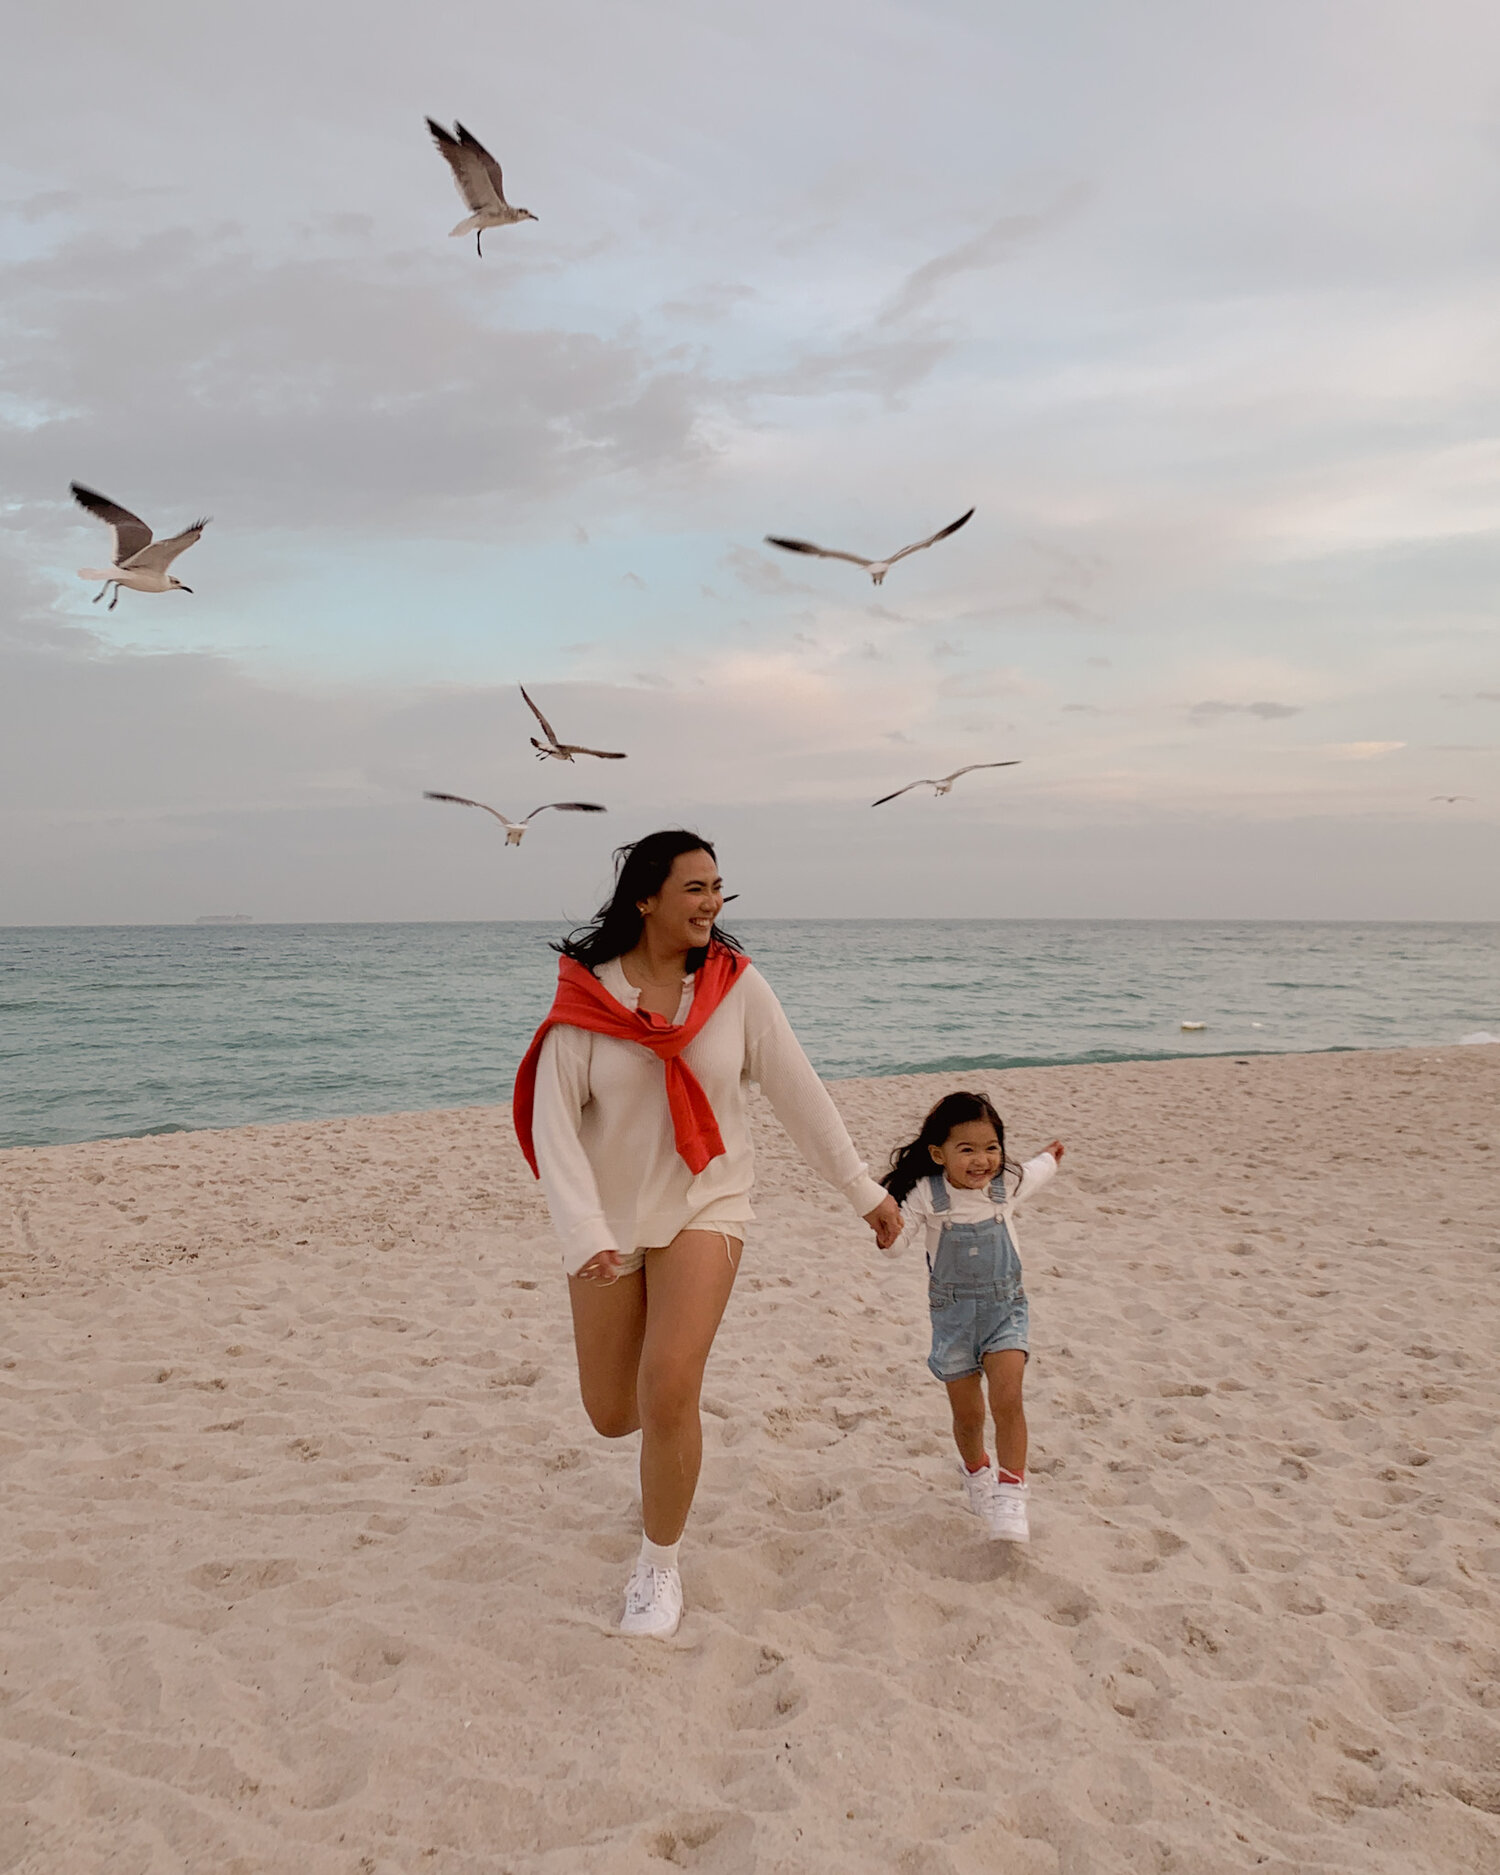 Capri Blue and Me  Corinth Suarez - Miami, Florida Blogger & Influencer